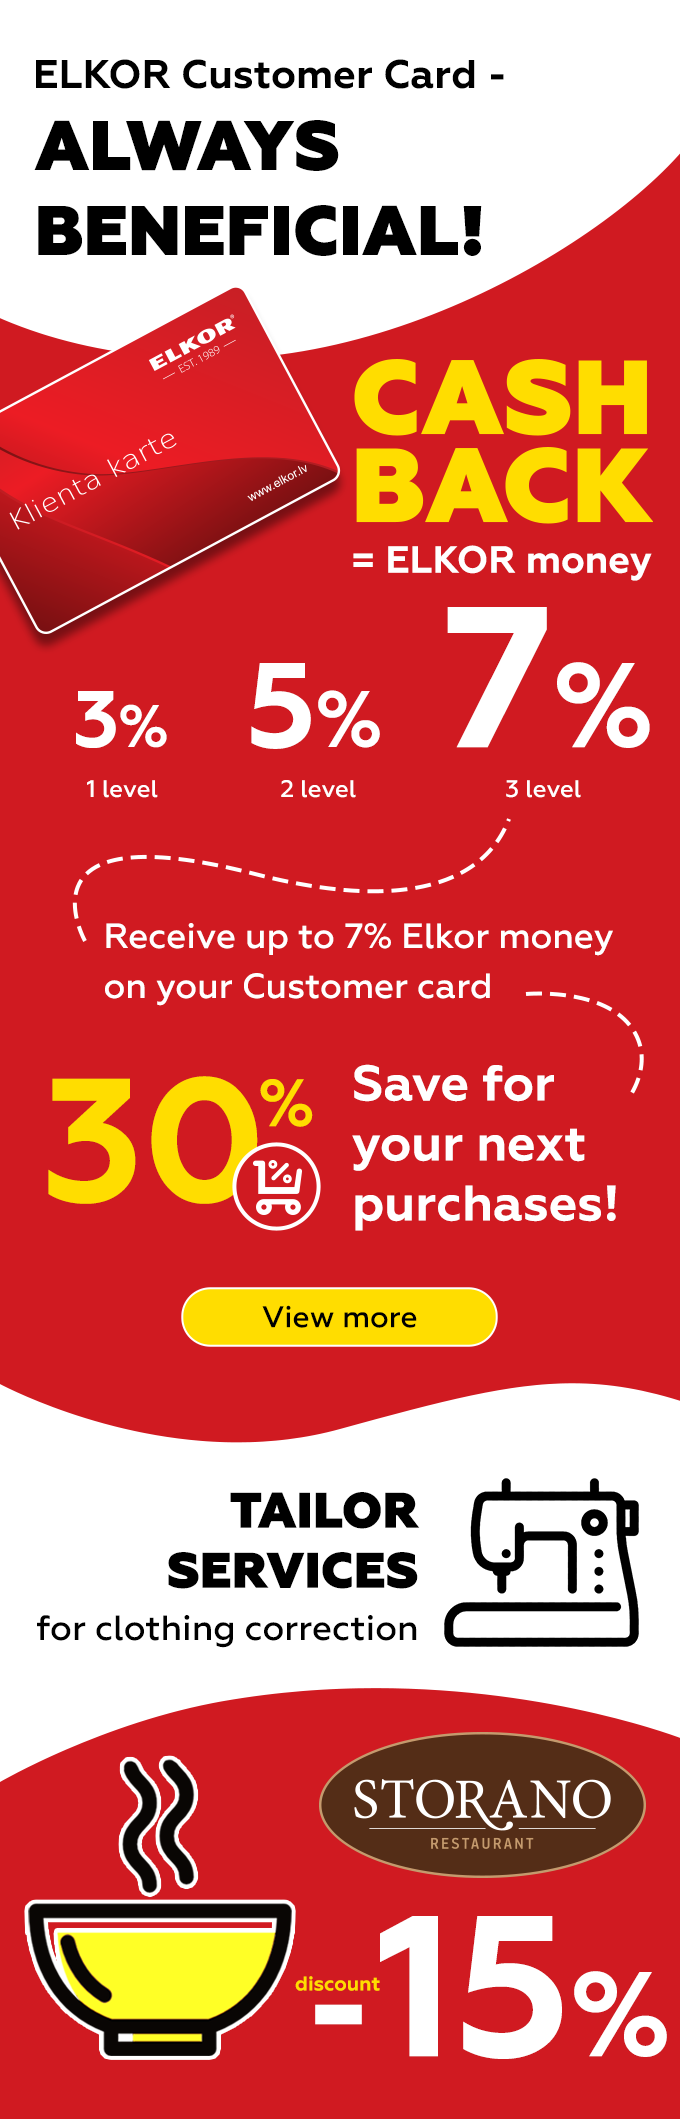 Elkor Customer card- always beneficial!